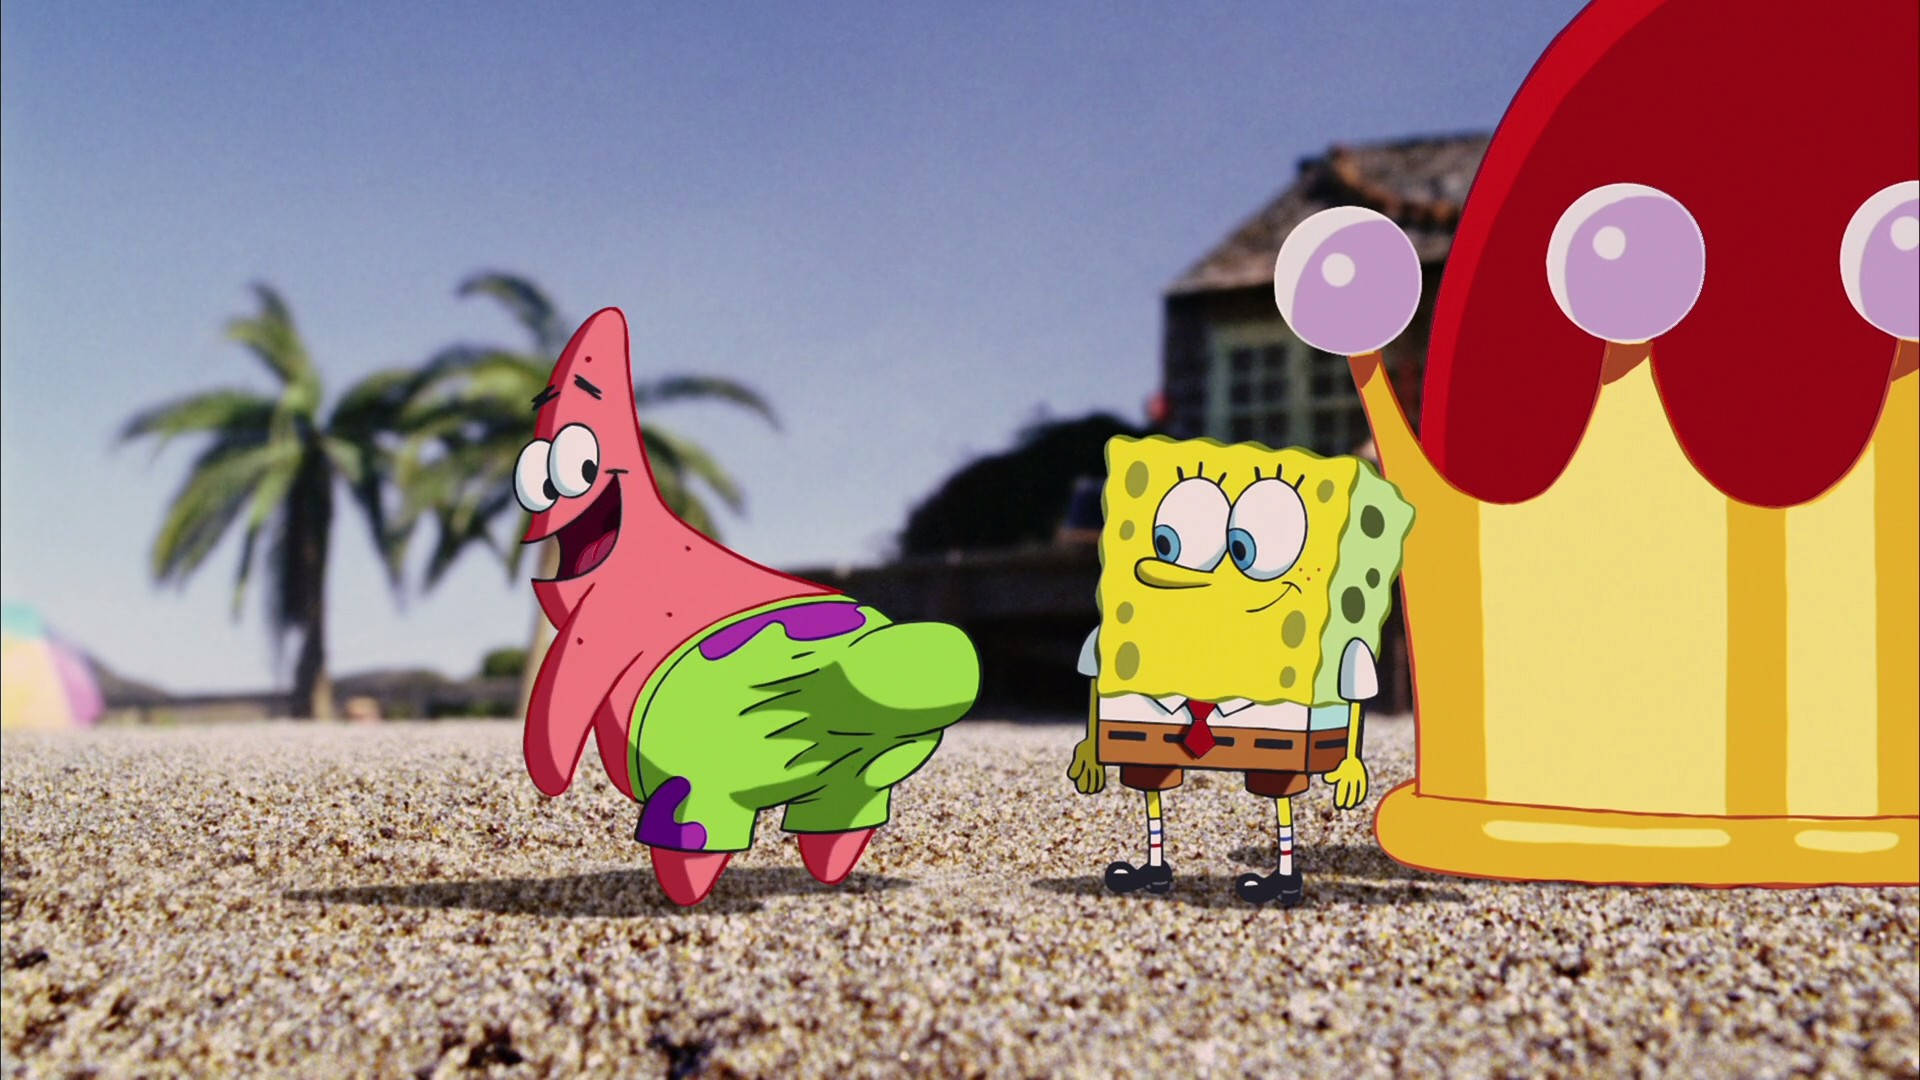 Funny Spongebob And Patrick’s Bum Wallpaper